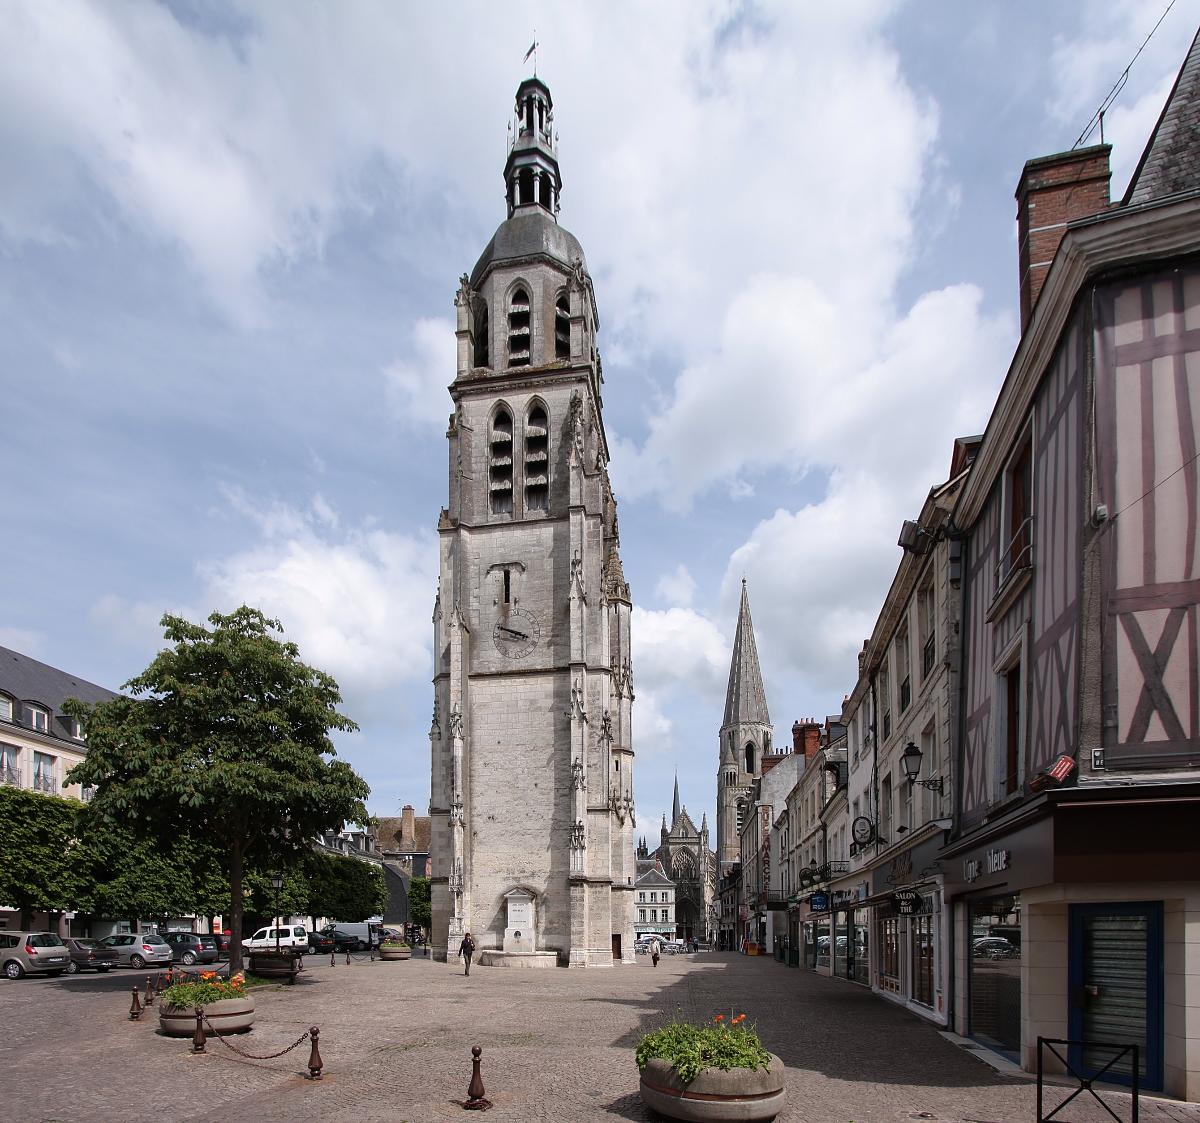 Die Kleinstadt Vendôme im Département Loir-et-Cher/Frankreich Place St-Martin im Stadtzentrum mit dem Turm der ehemaligen Kirche Saint-Martin und im Hintergrund die Kirche der ehemaligen Dreifaltigkeits-Abtei.